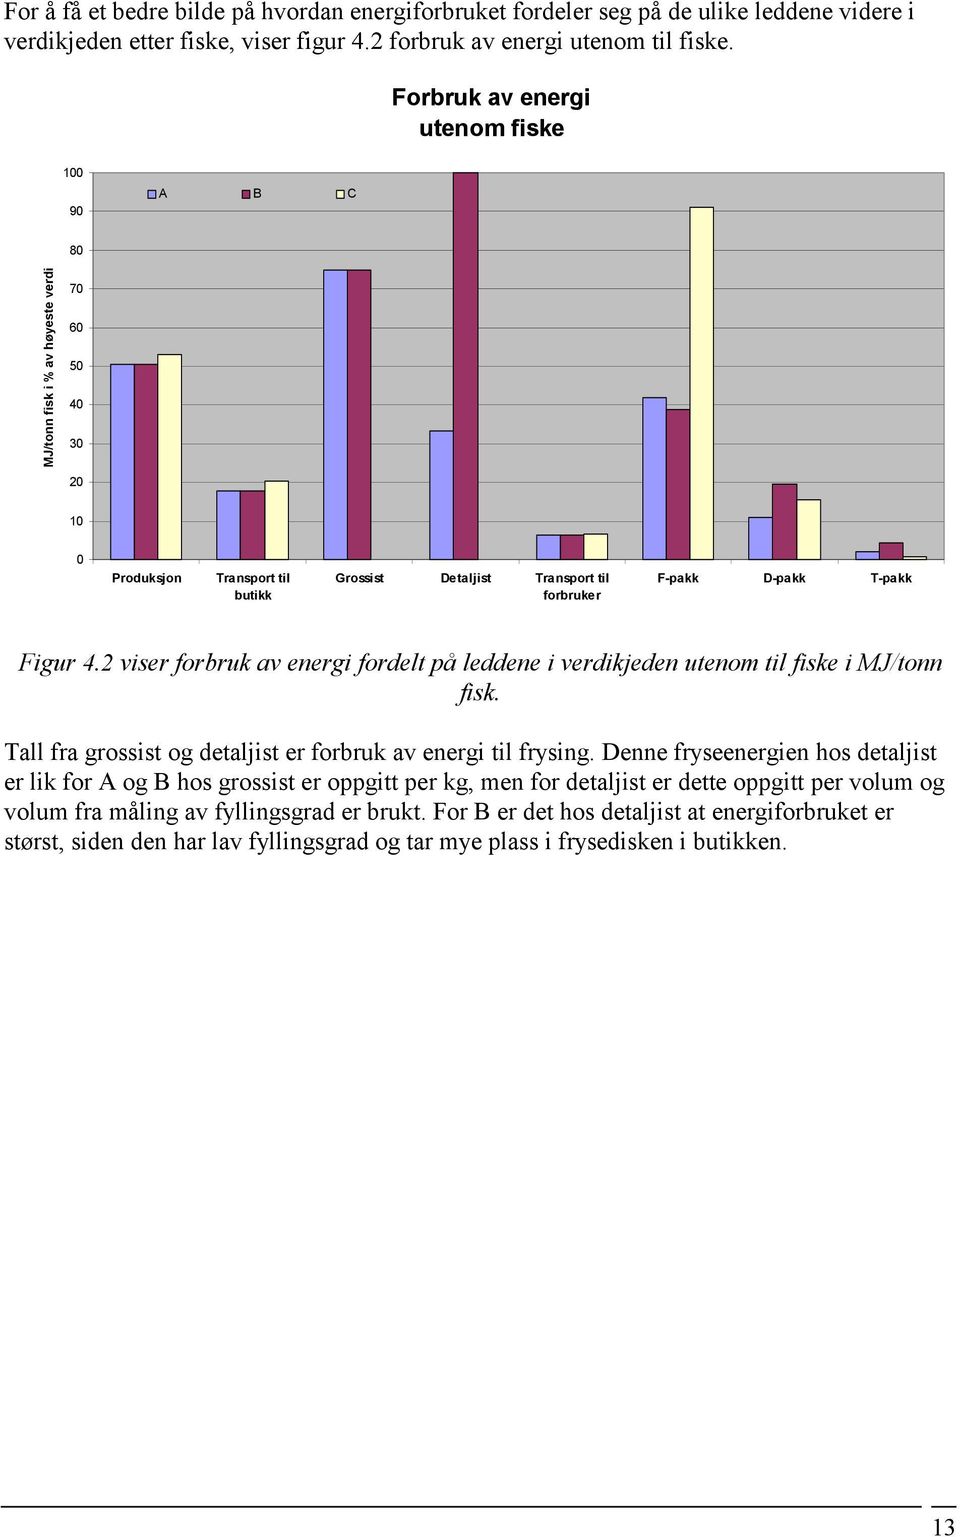 Figur 4.2 viser forbruk av energi fordelt på leddene i verdikjeden utenom til fiske i MJ/tonn fisk. Tall fra grossist og detaljist er forbruk av energi til frysing.